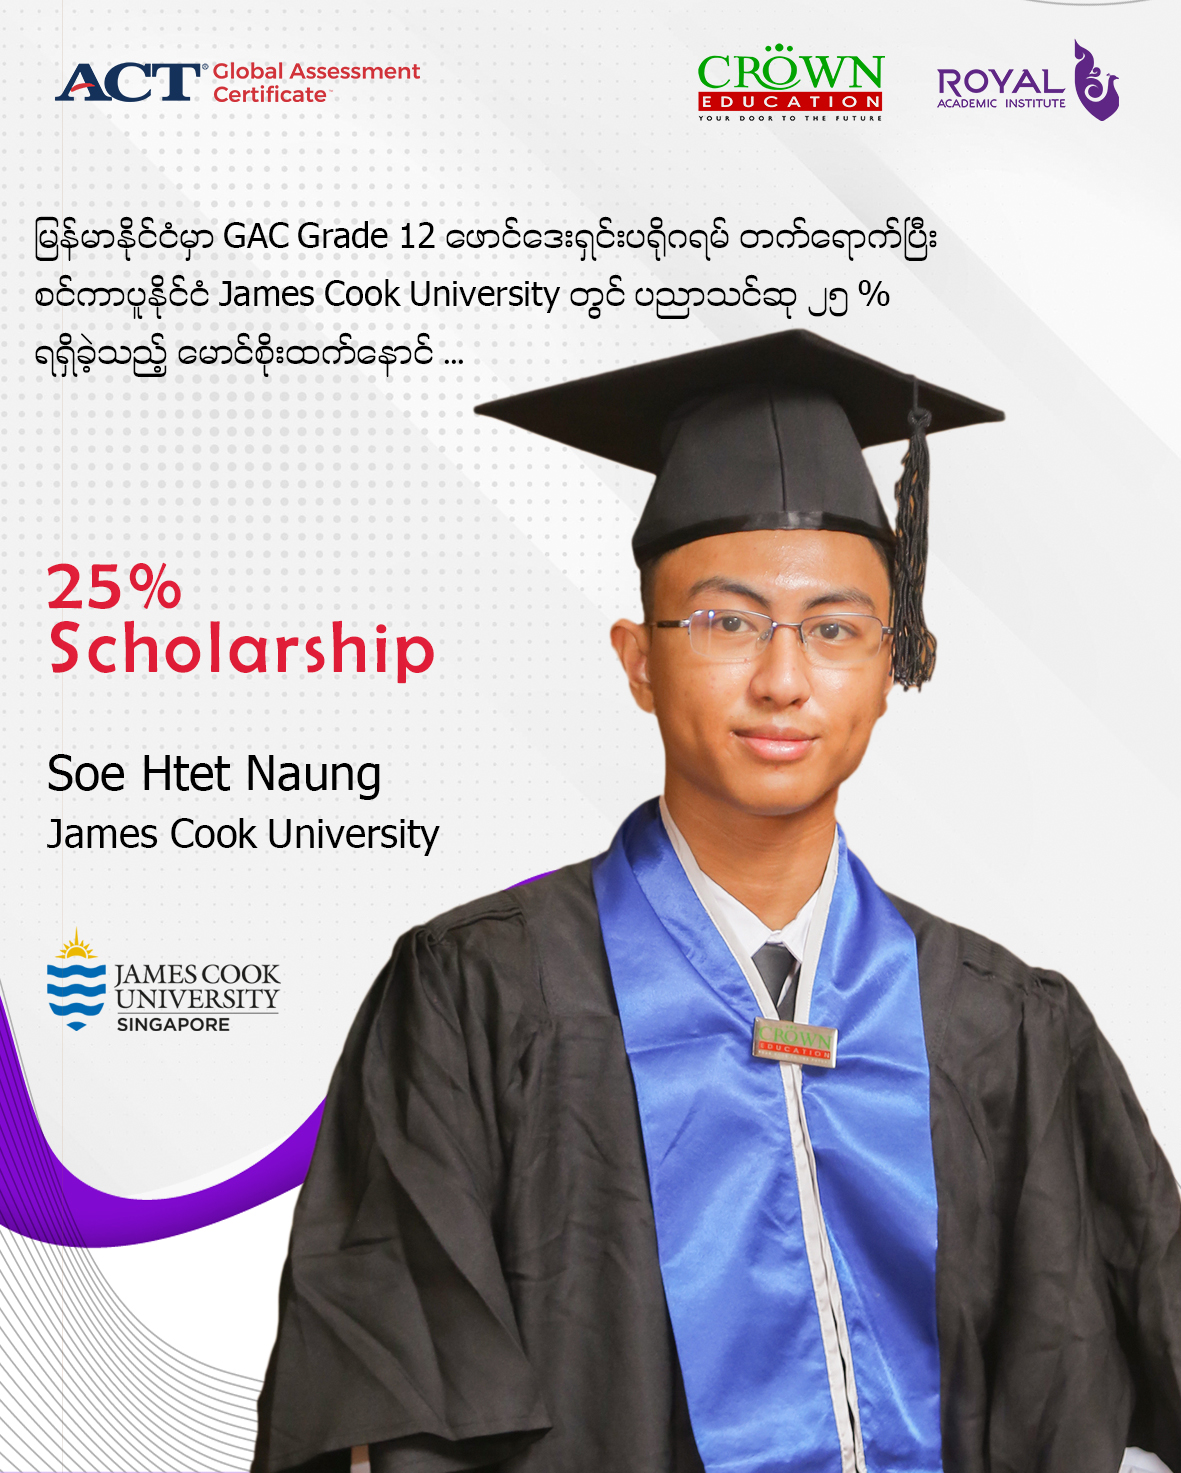 မြန်မာနိုင်ငံမှာ GAC GRADE 12 ဖောင်ဒေးရှင်း ပရိုဂရမ် တက်ရောက်ပြီး စင်ကာပူနိုင်ငံ JAMES COOK UNIVERSITY တွင်ပညာသင်ဆု ၂၅% ရရှိခဲ့သည့် မောင်စိုးထက်နောင်